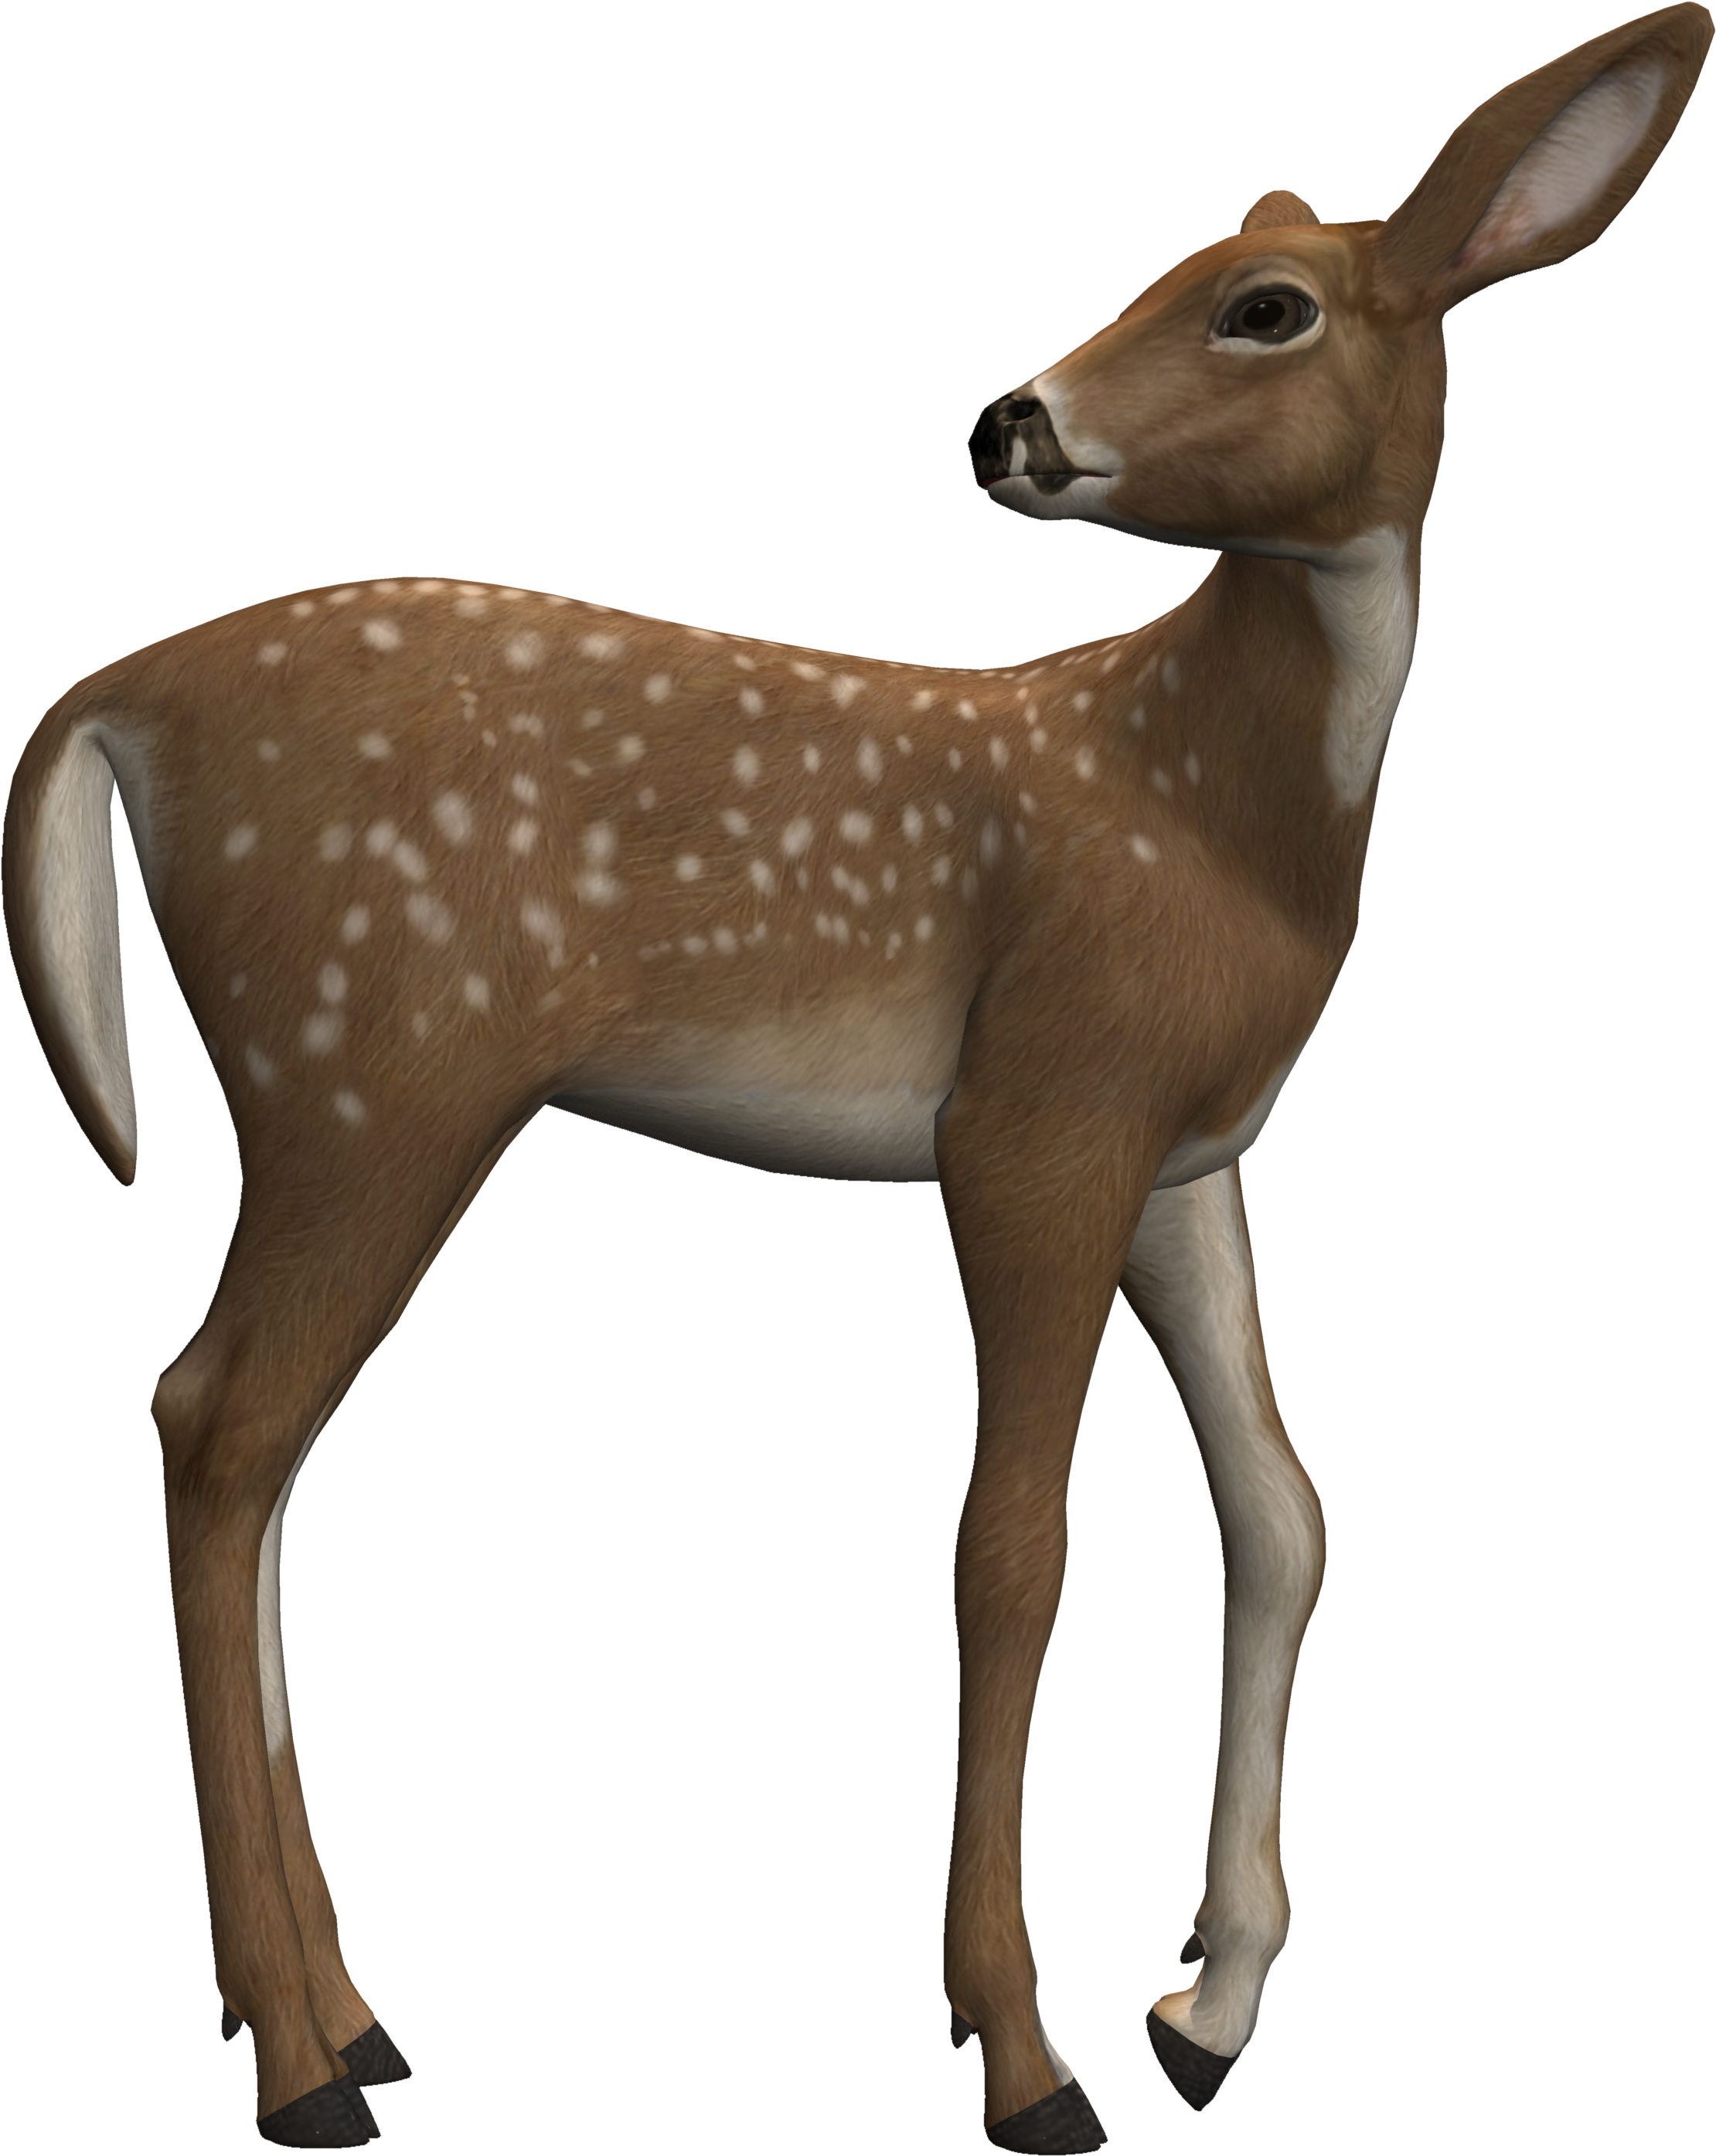 A Close Up Of A Deer